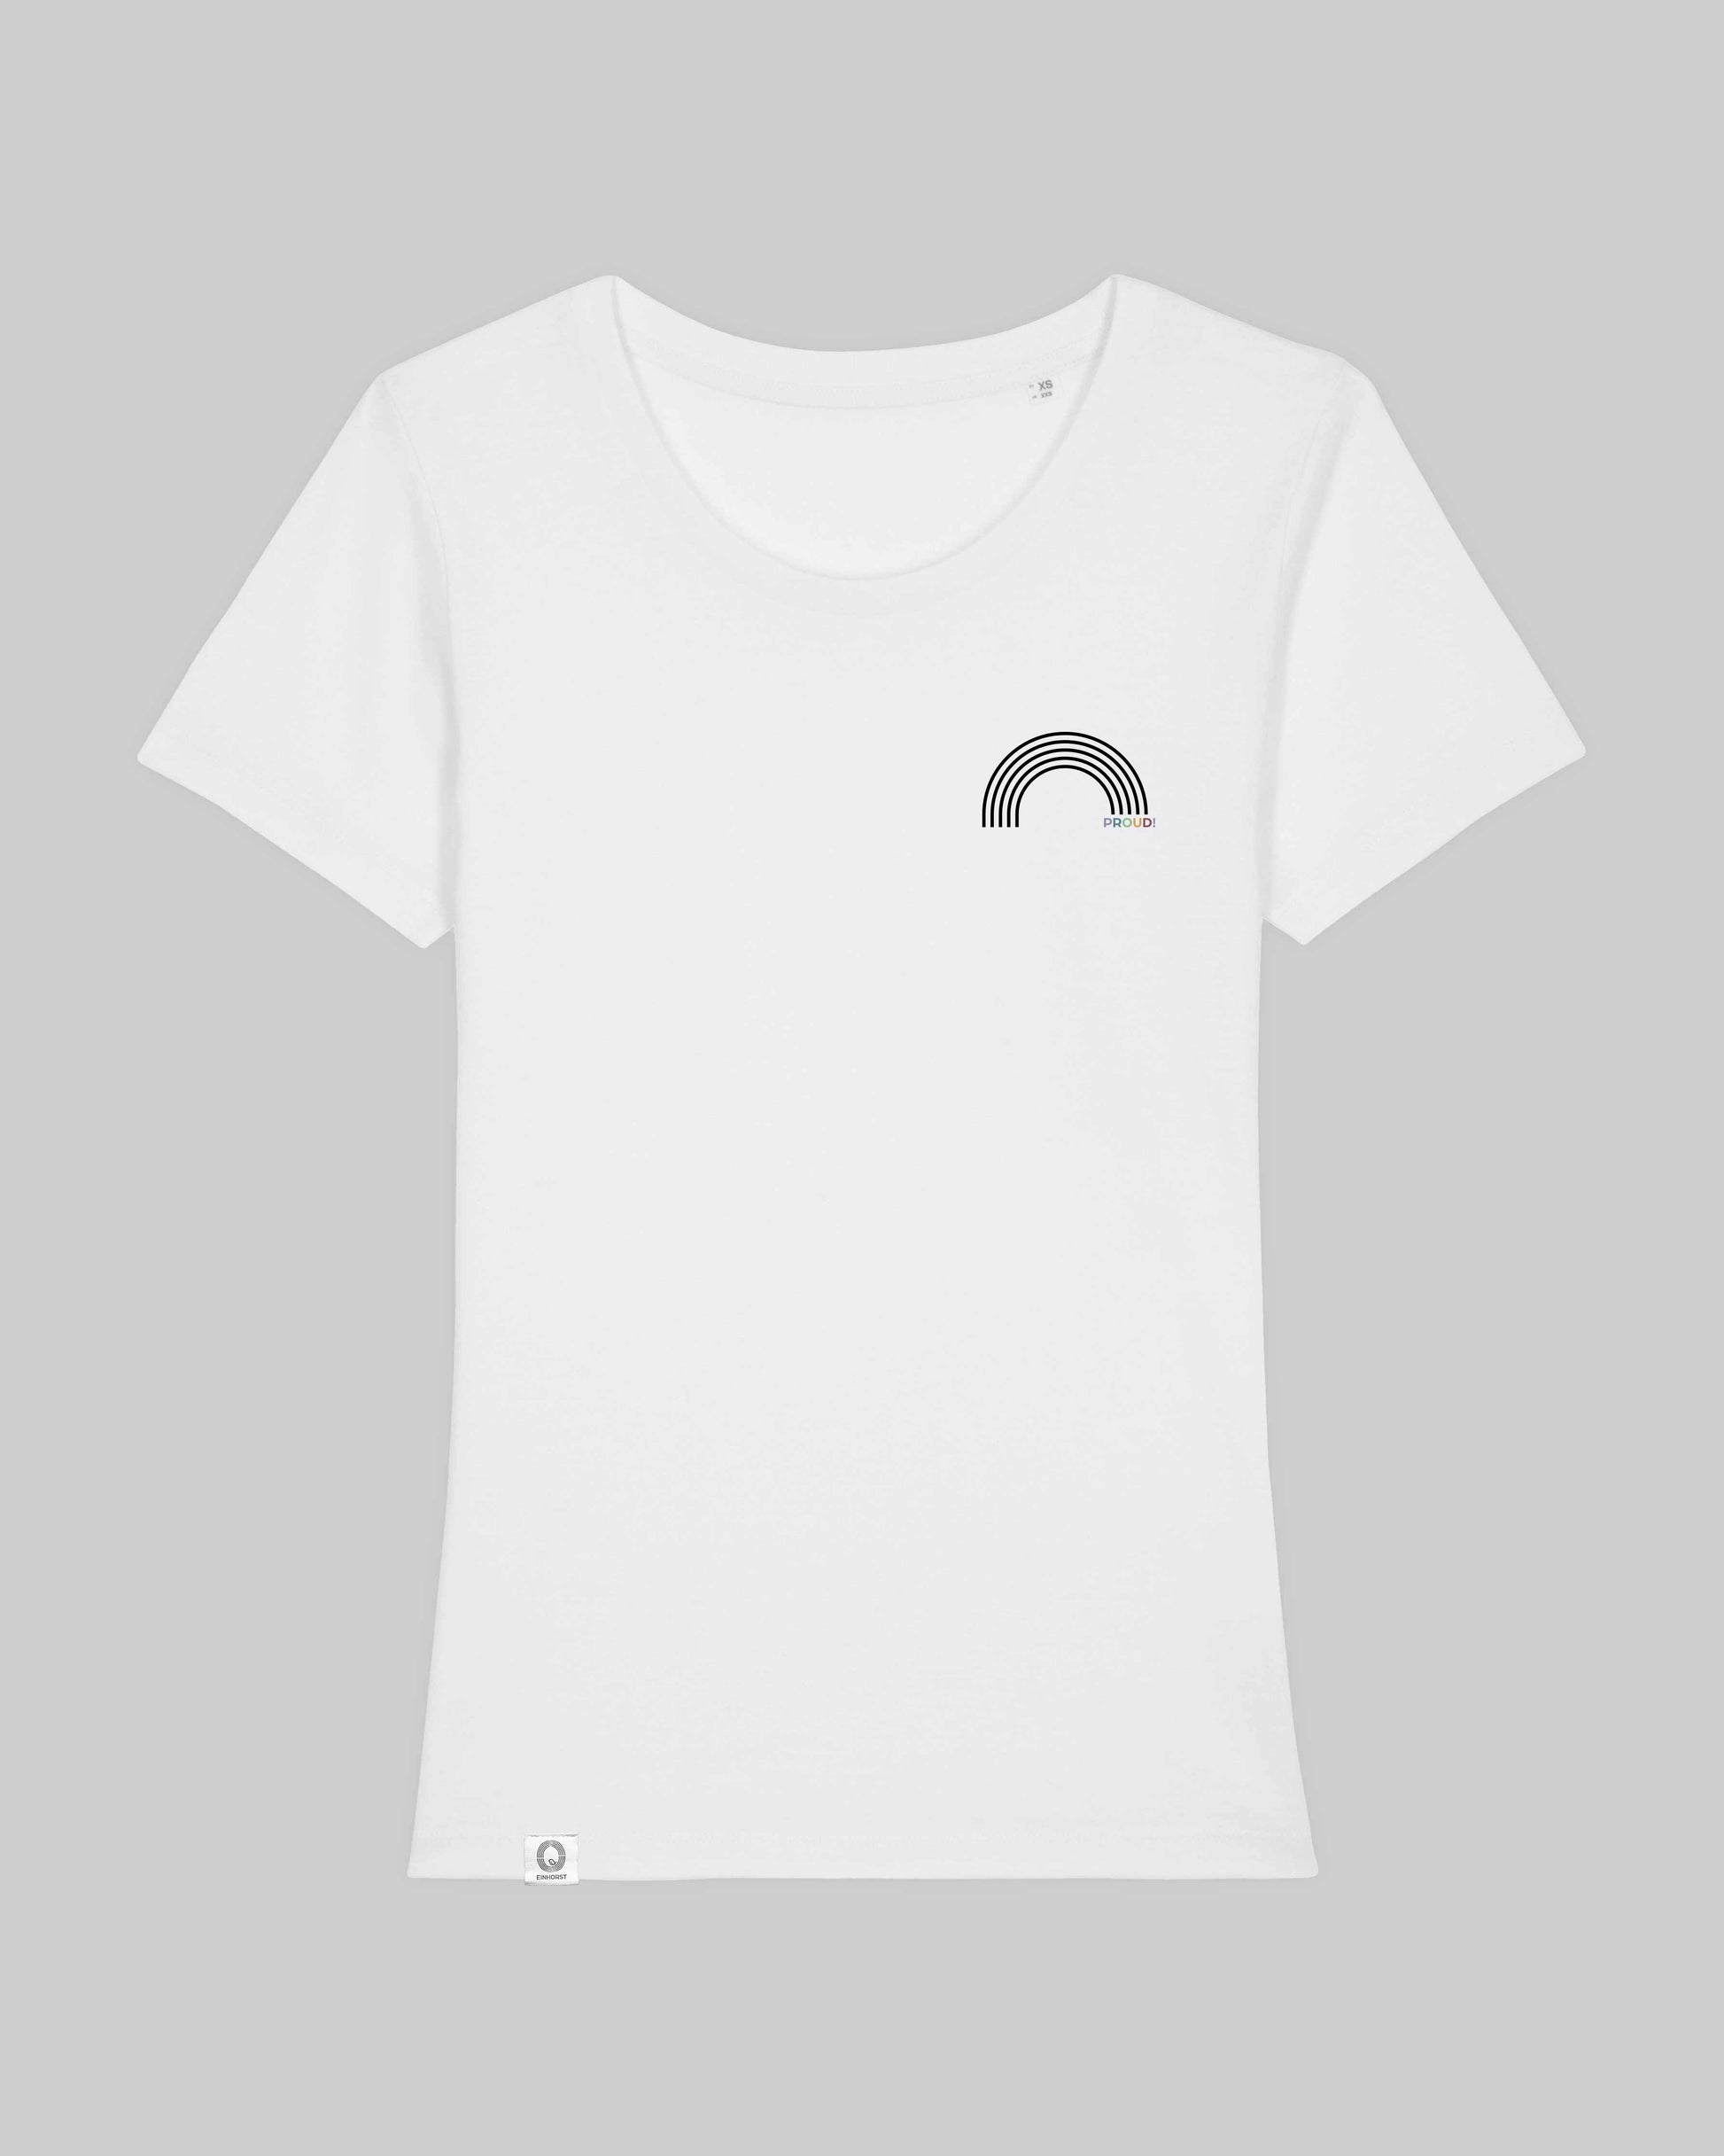 EINHORST® Organic Shirt tailliert in "Weiß" mit dem Motiv "proud Regenbogen" in der Kombination schwarzer Regenbogen mit bunter Schrift, Bild von Shirt von vorne